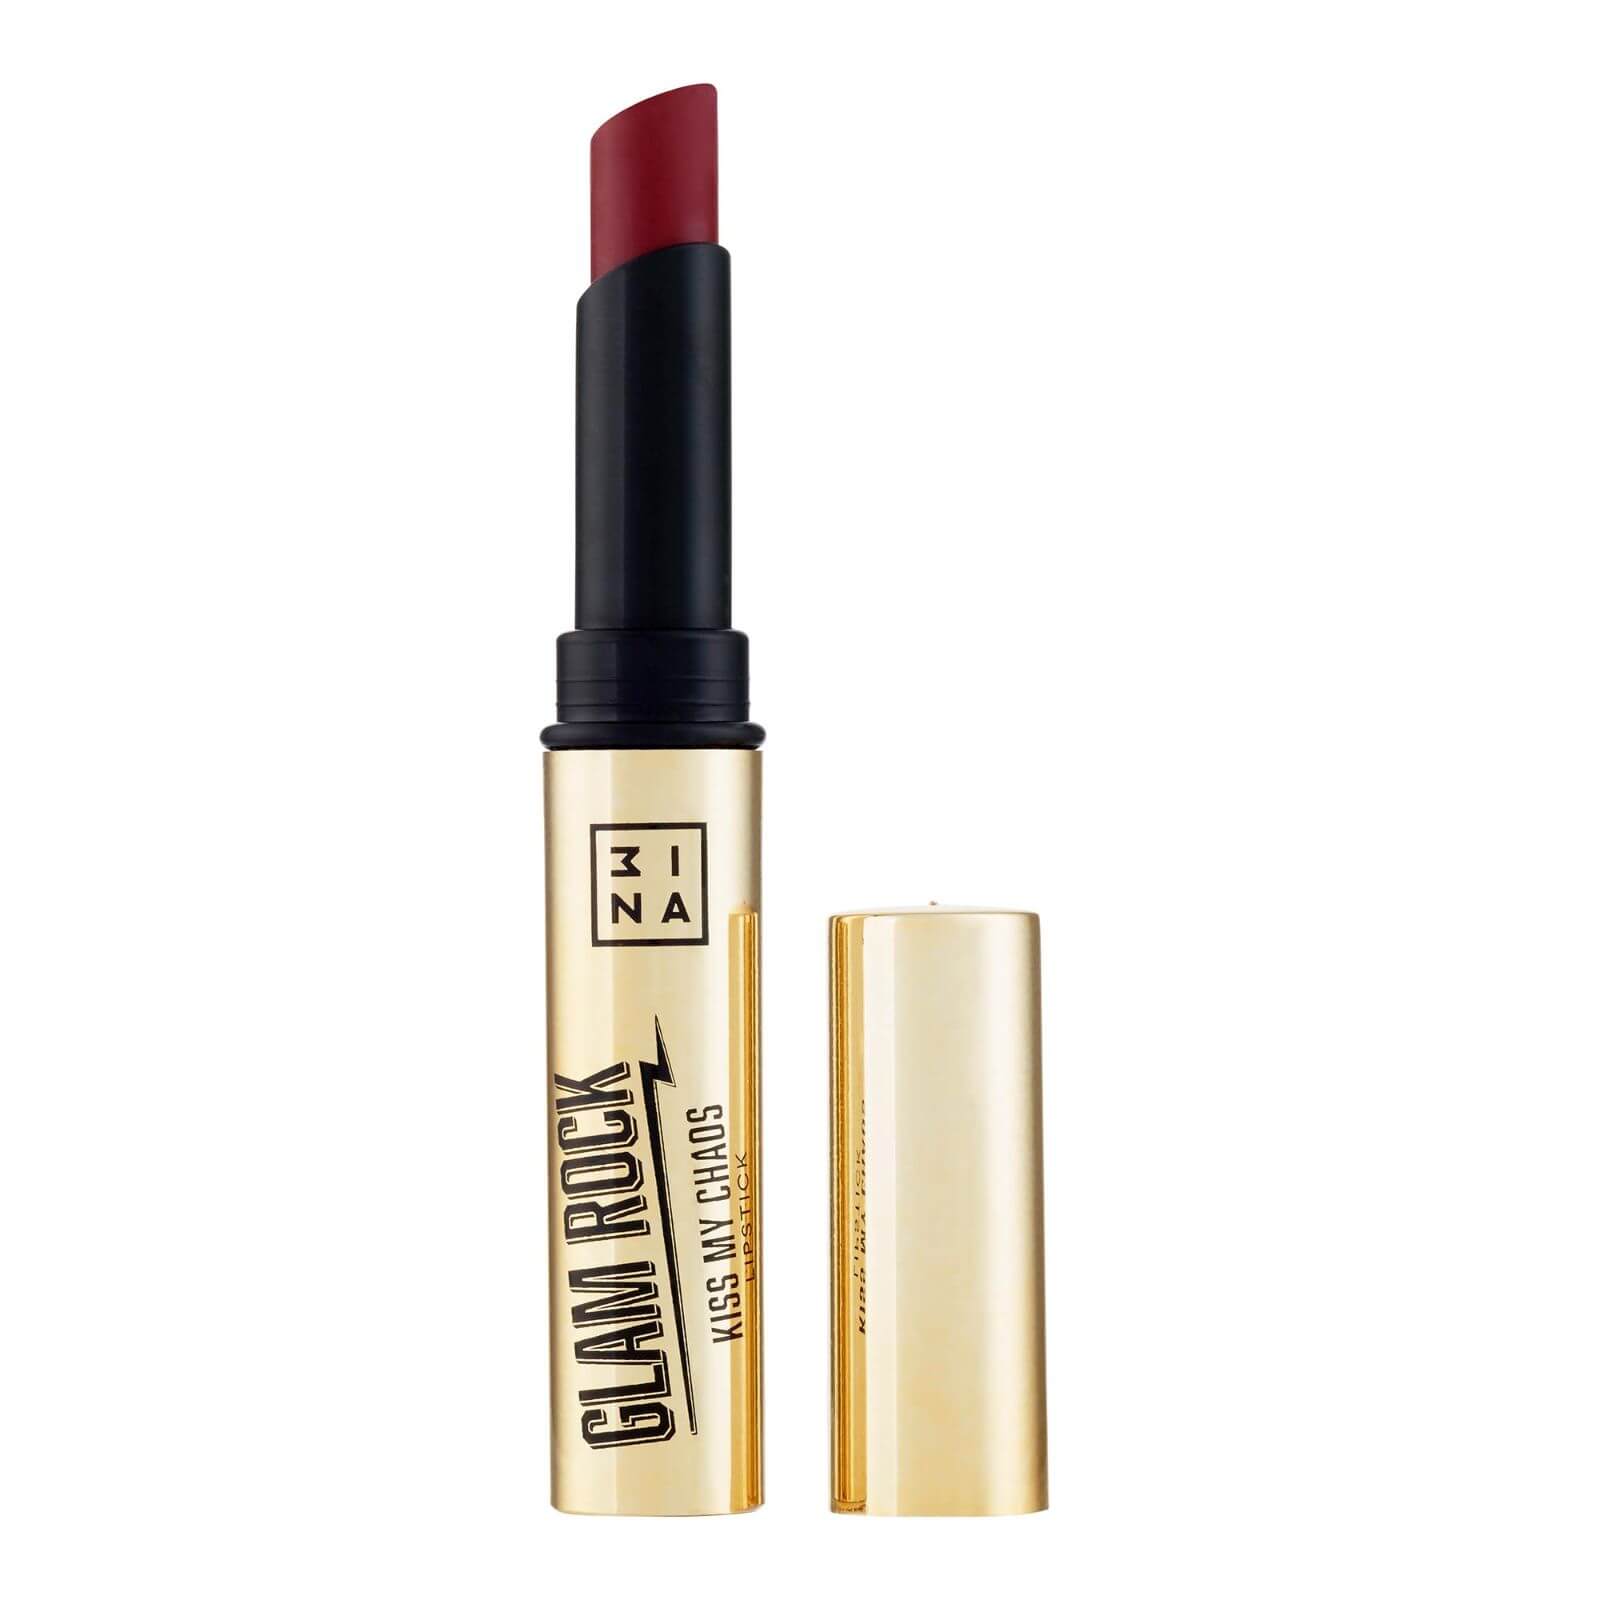 3INA Makeup Kiss my Chaos Lipstick 1.5g (Various Shades) – Head Rush Burgundy lookfantastic.com imagine